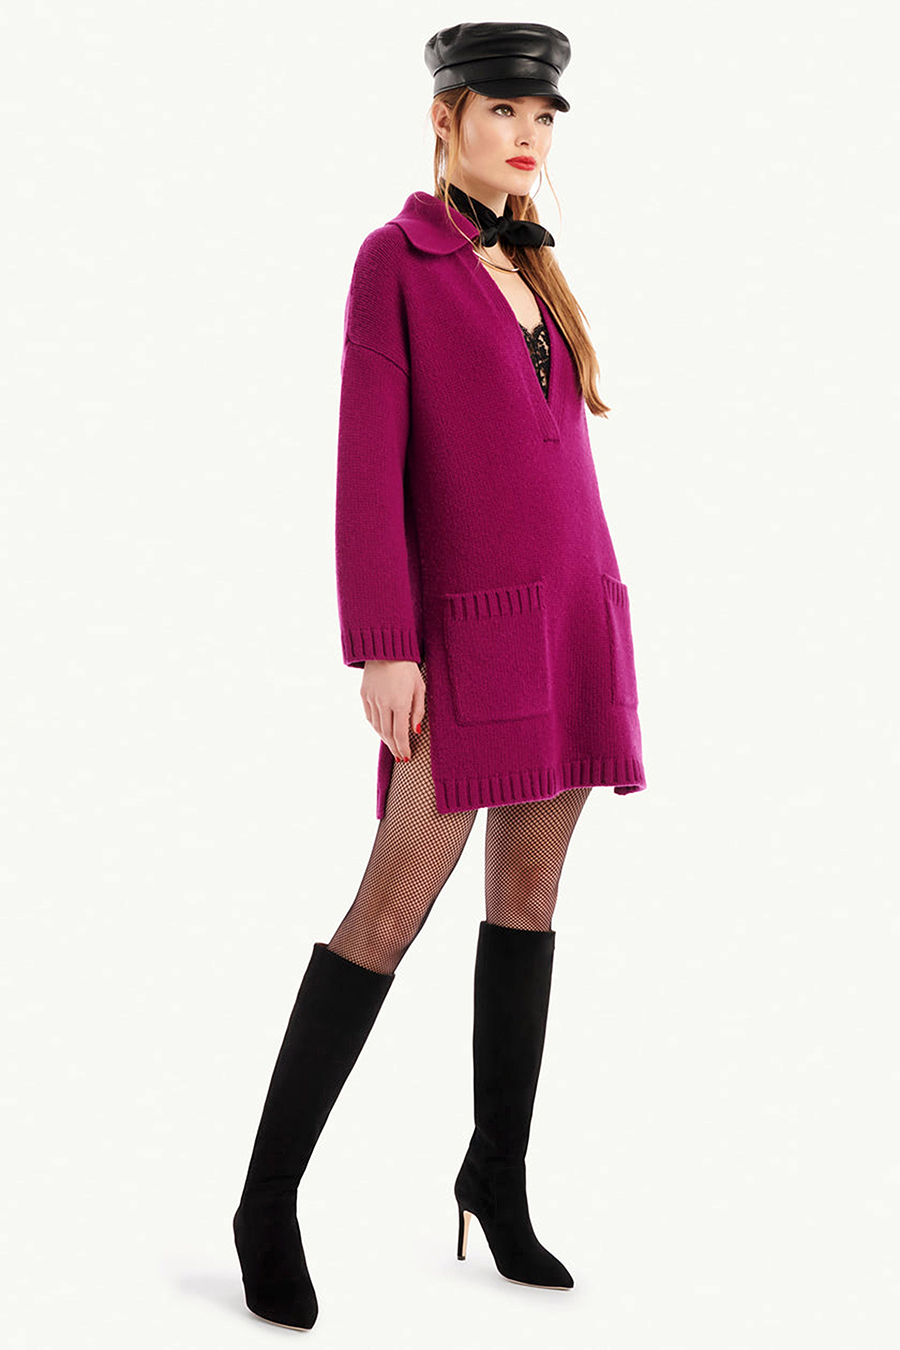 модное платье свитер вязаное трикотажное зима 2021 2022